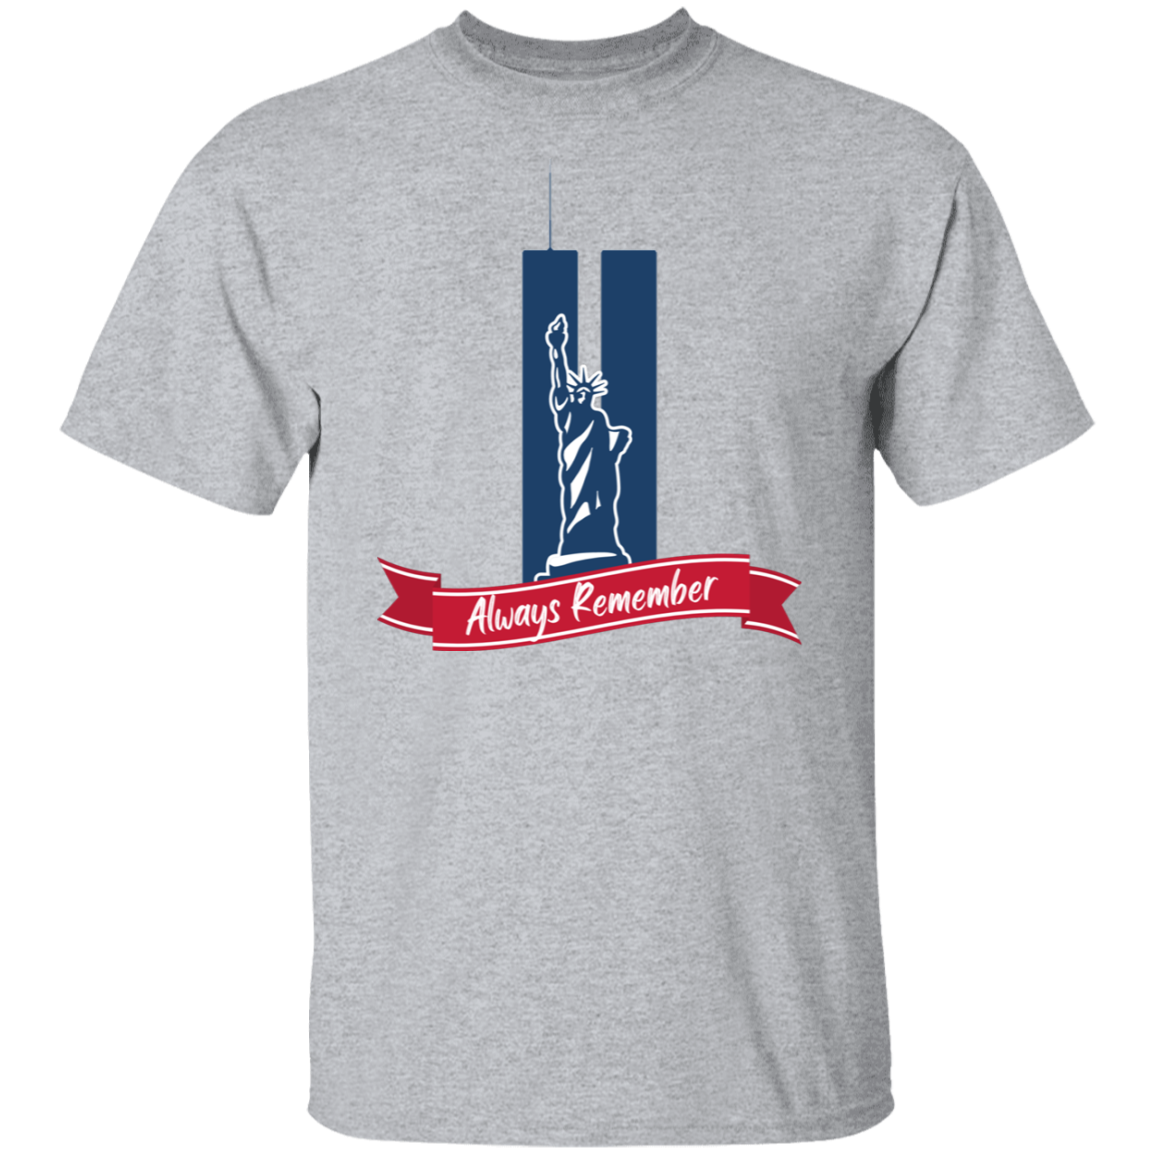 Always Remember - Men's, Women's, Unisex T-Shirt